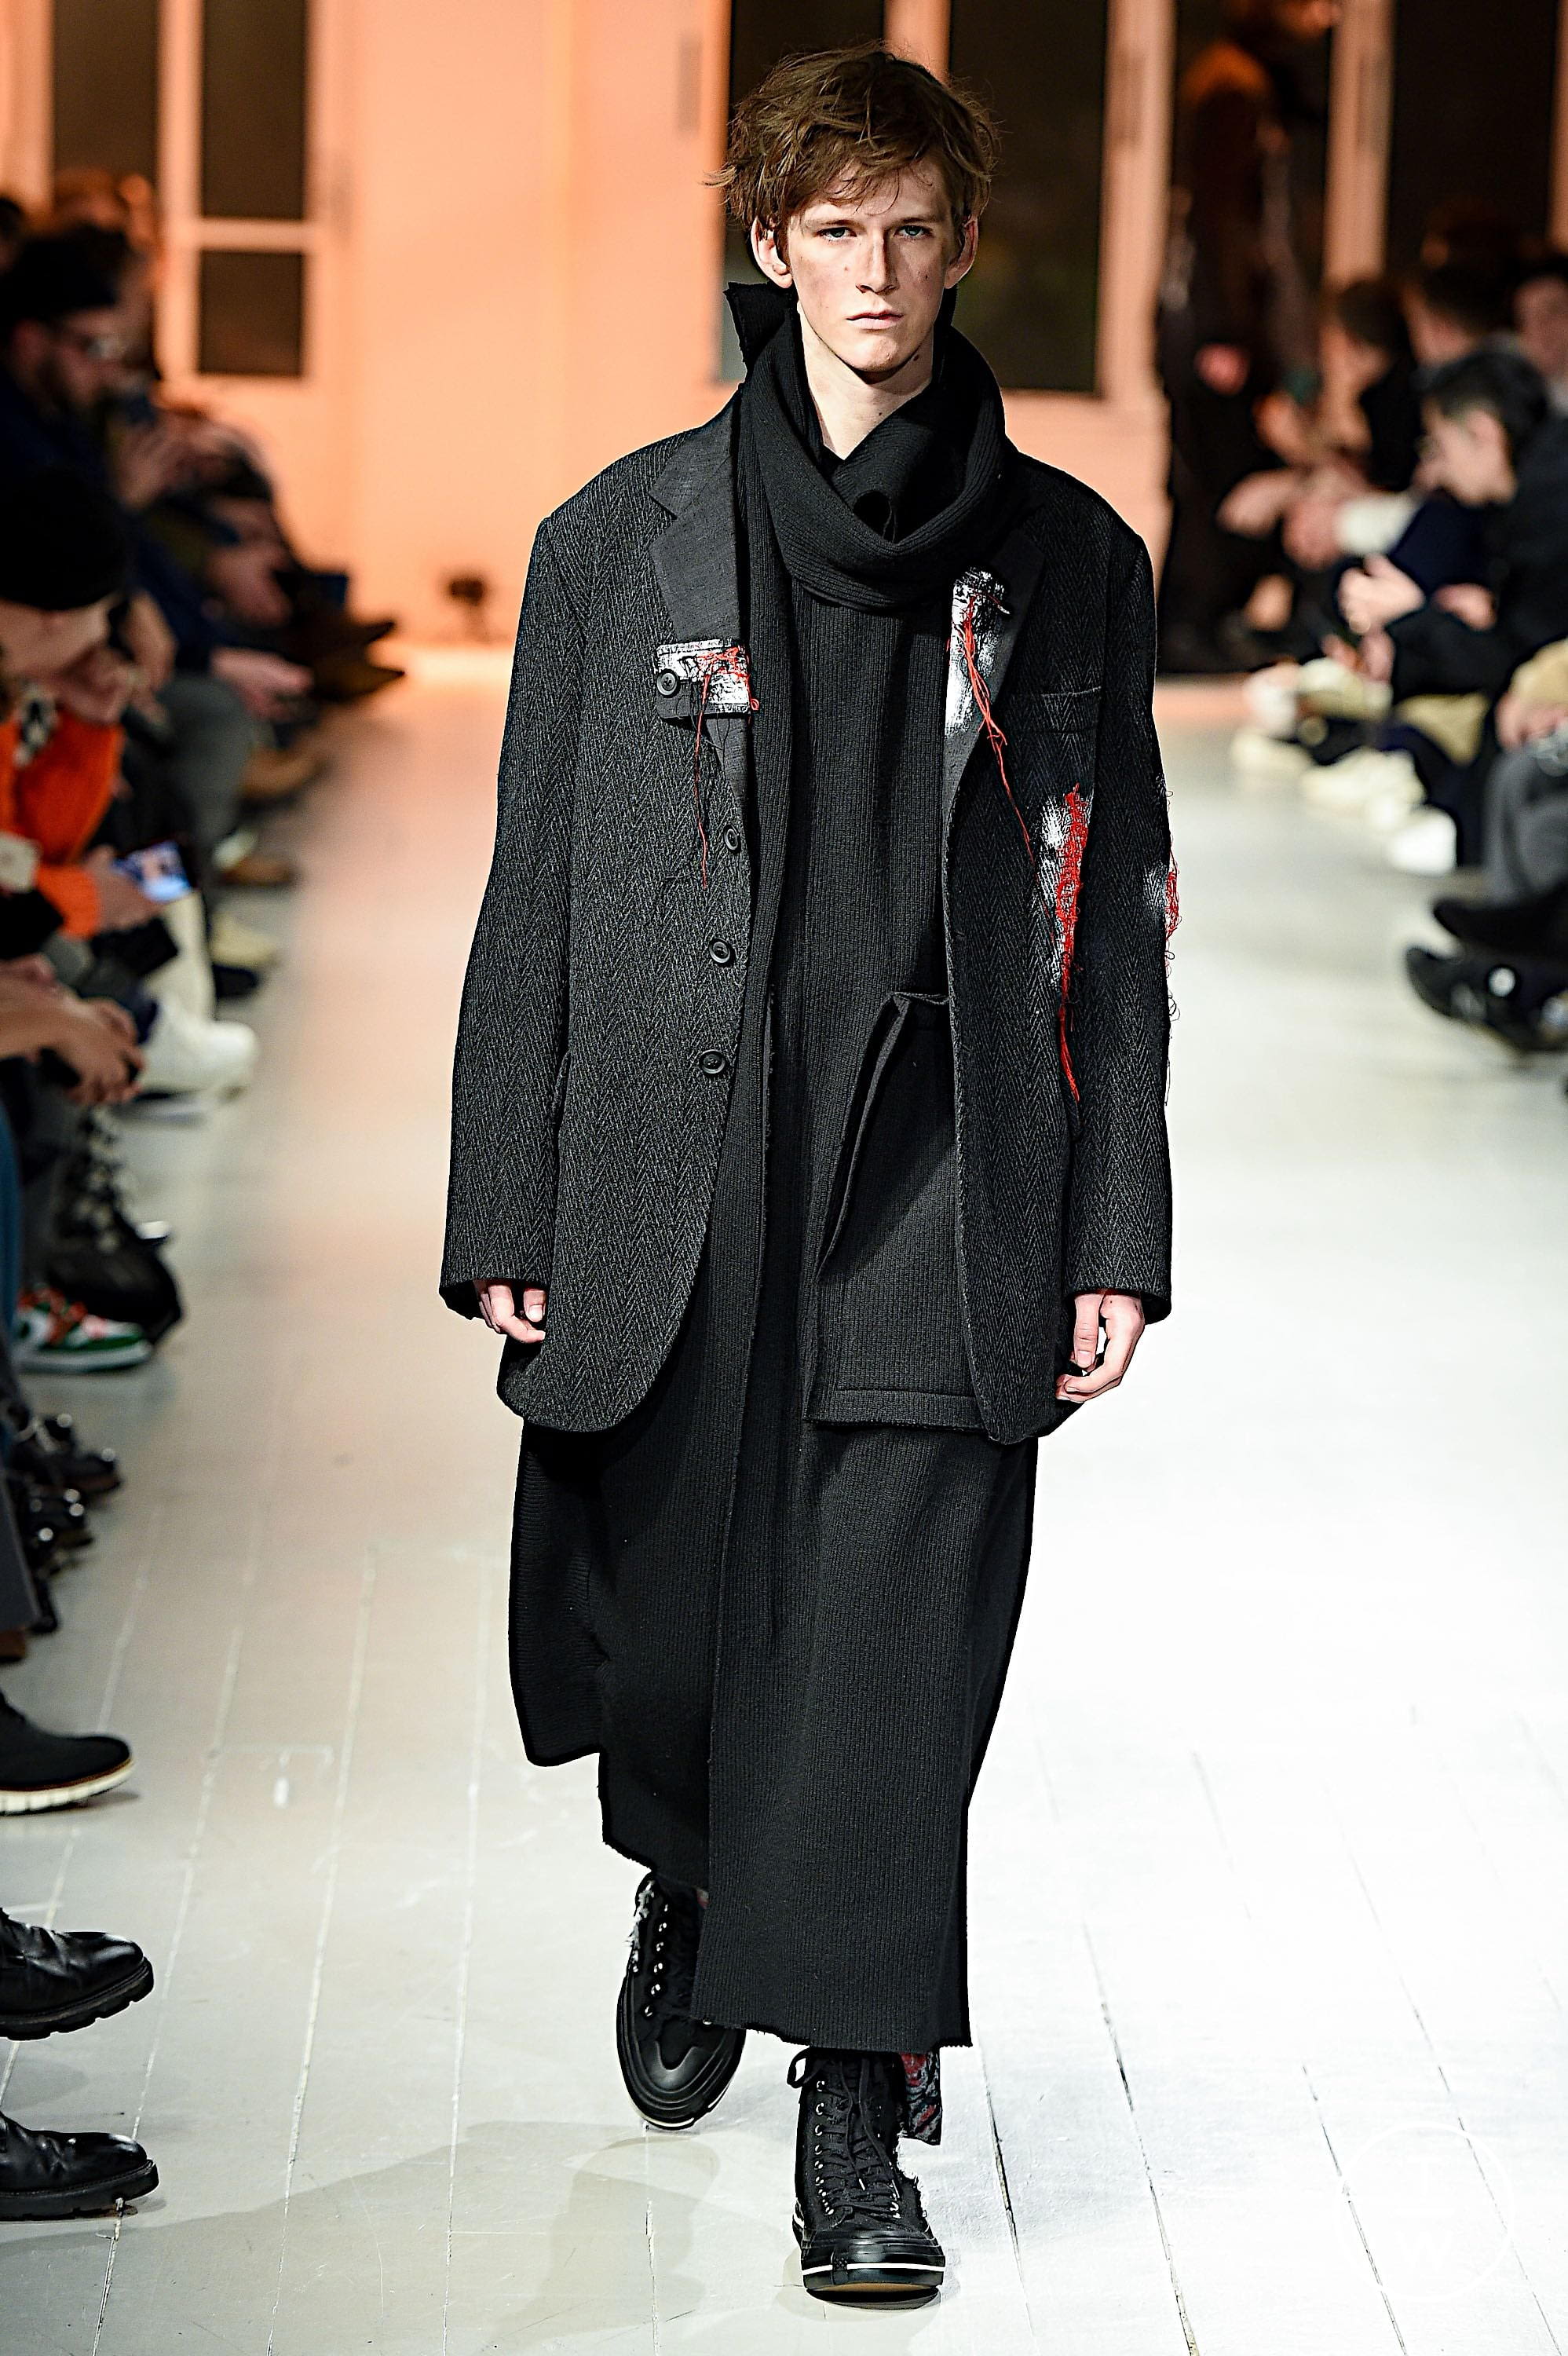 nito nito | Japonism in fashion